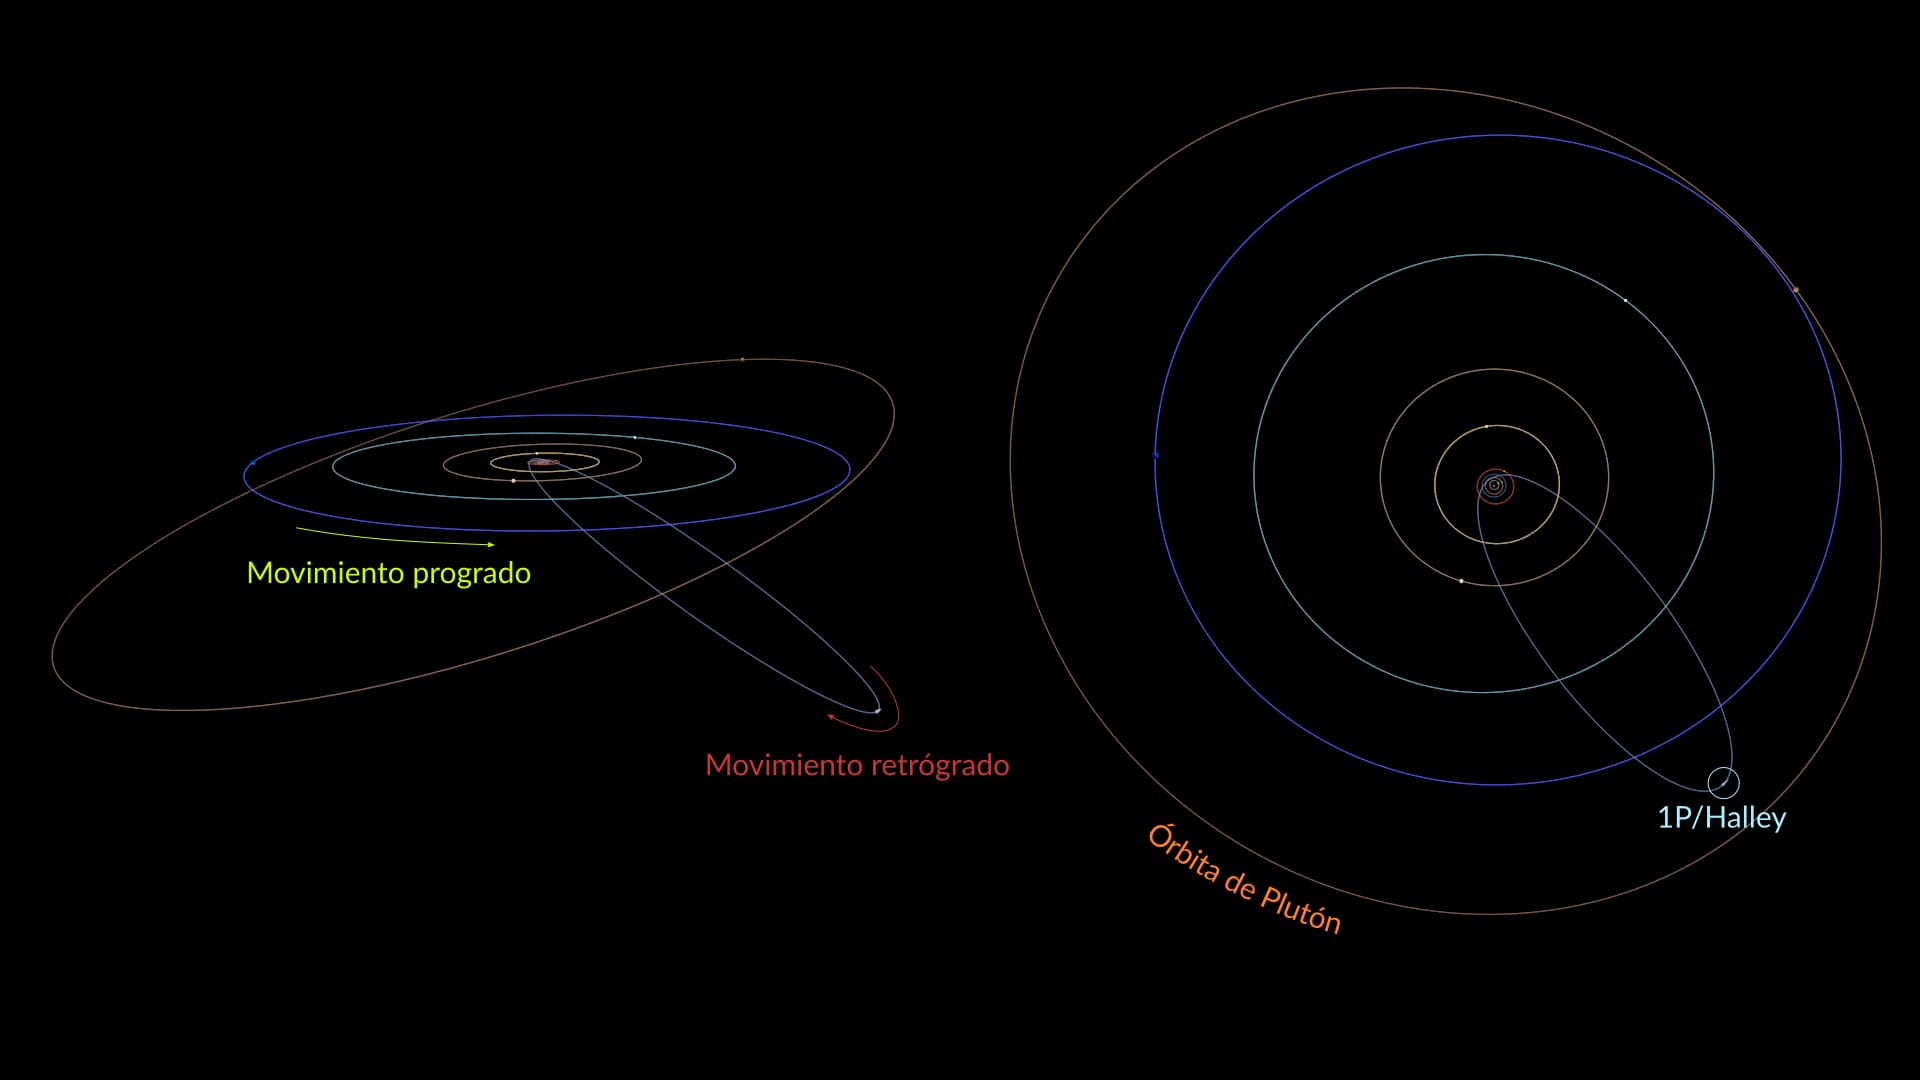 Comet Halley's orbit